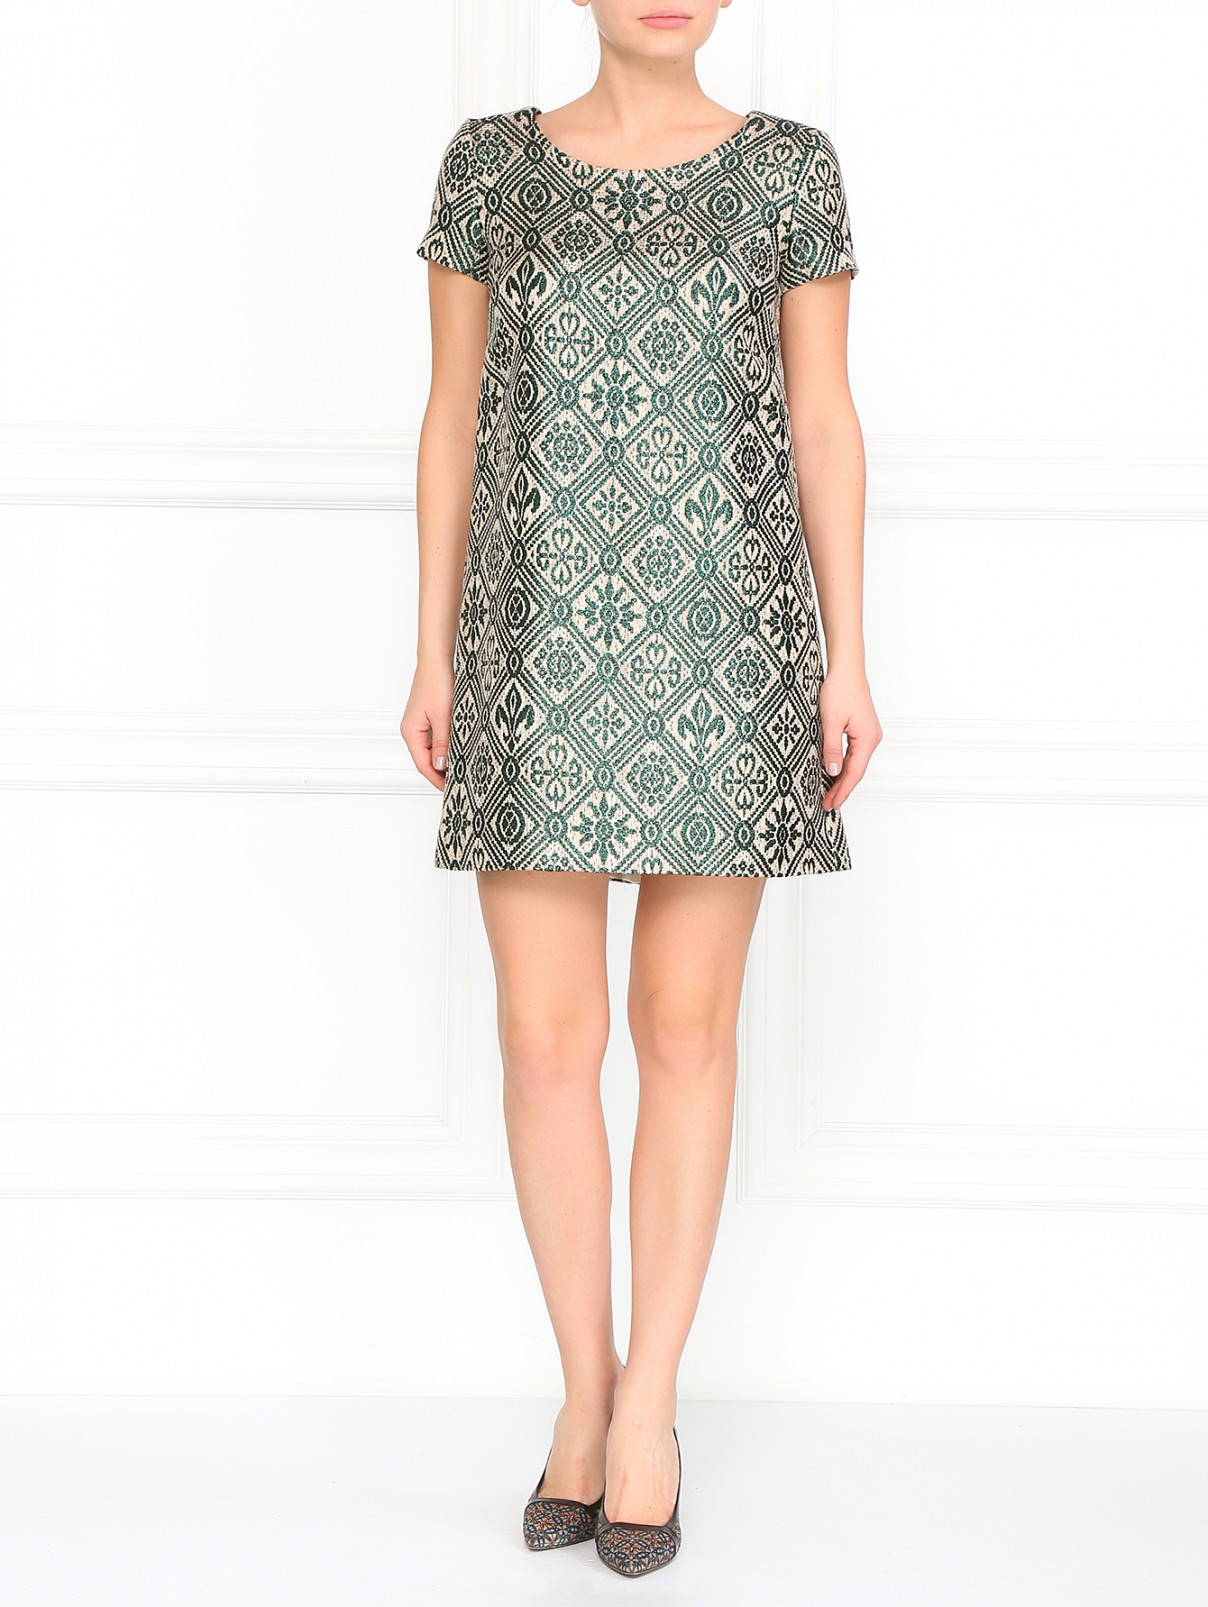 Мини-платье с принтом Vanda Catucci  –  Модель Общий вид  – Цвет:  Зеленый